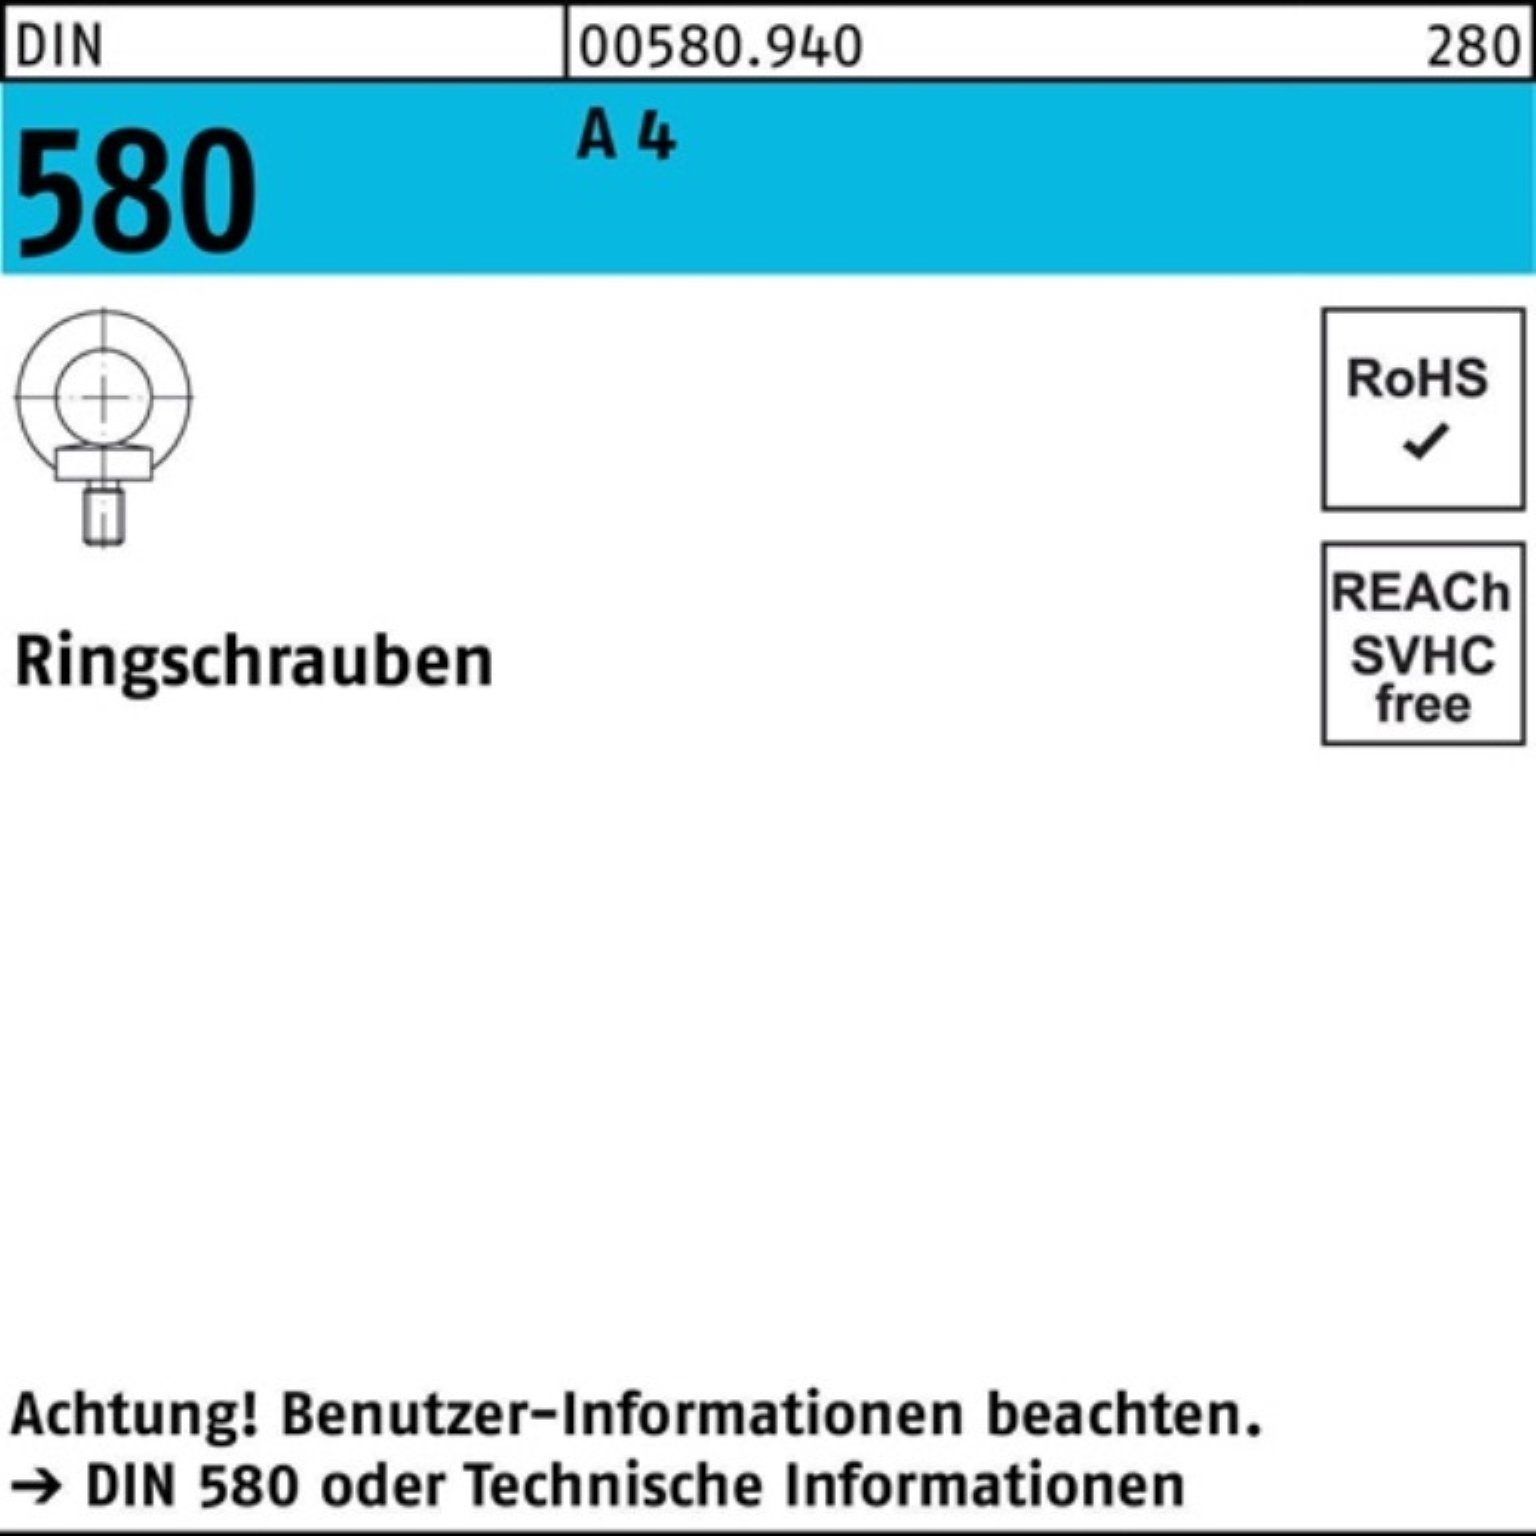 Reyher Schraube 100er Pack Ringschraube DIN 580 M6 A 4 1 Stück DIN 580 A 4 Ringschrau